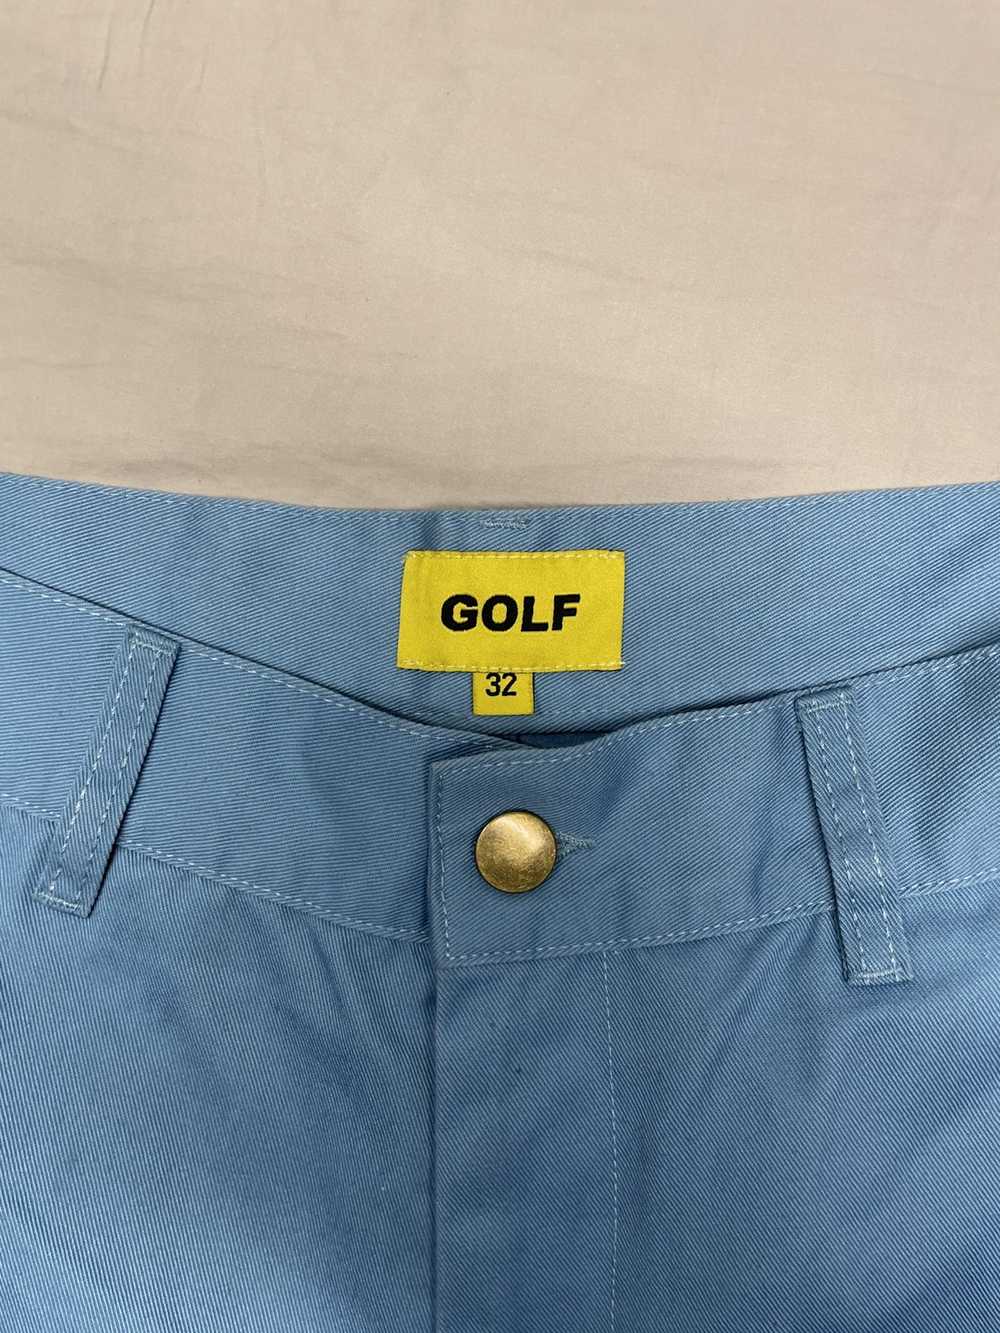 Golf Wang Golf “Baby Blue” Shorts - image 4